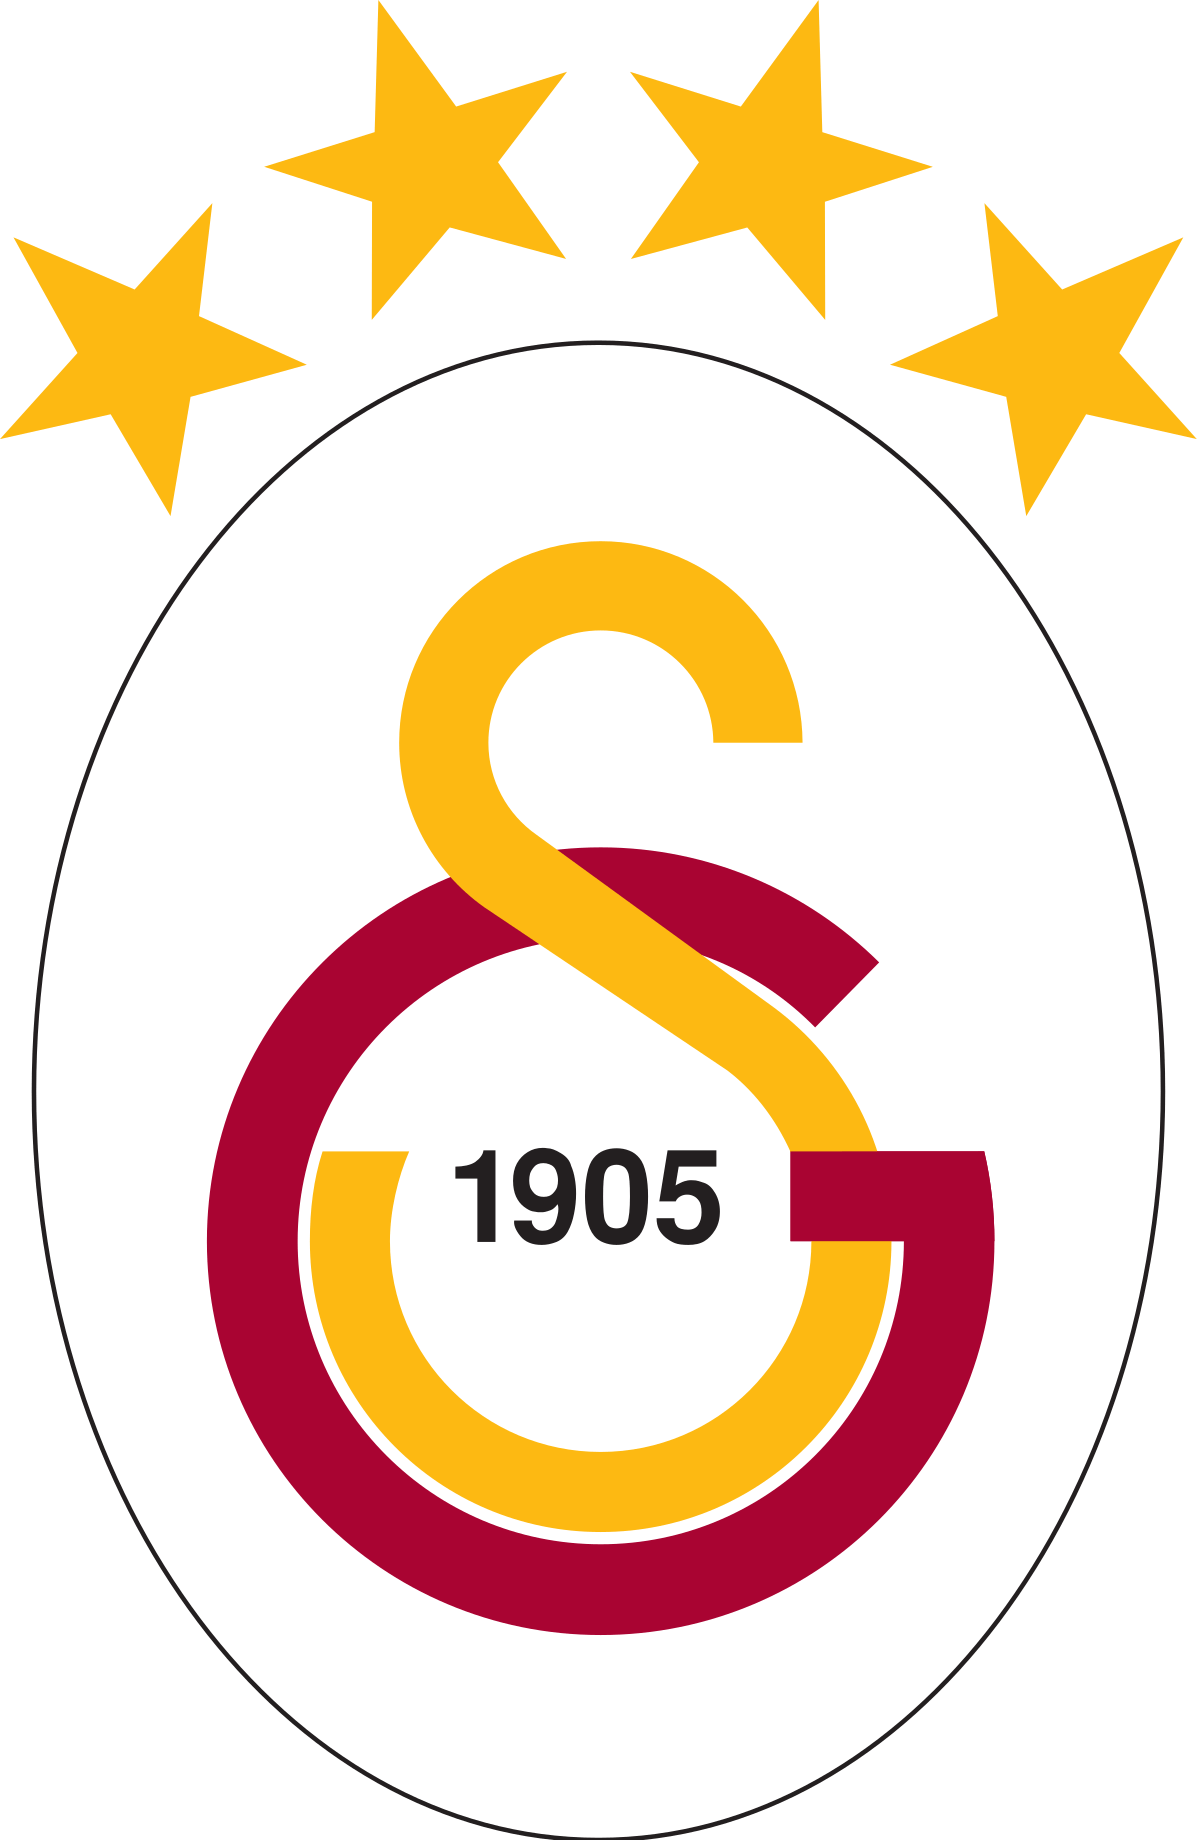 Galatasaray Logo - Galatasaray S.K. (football)